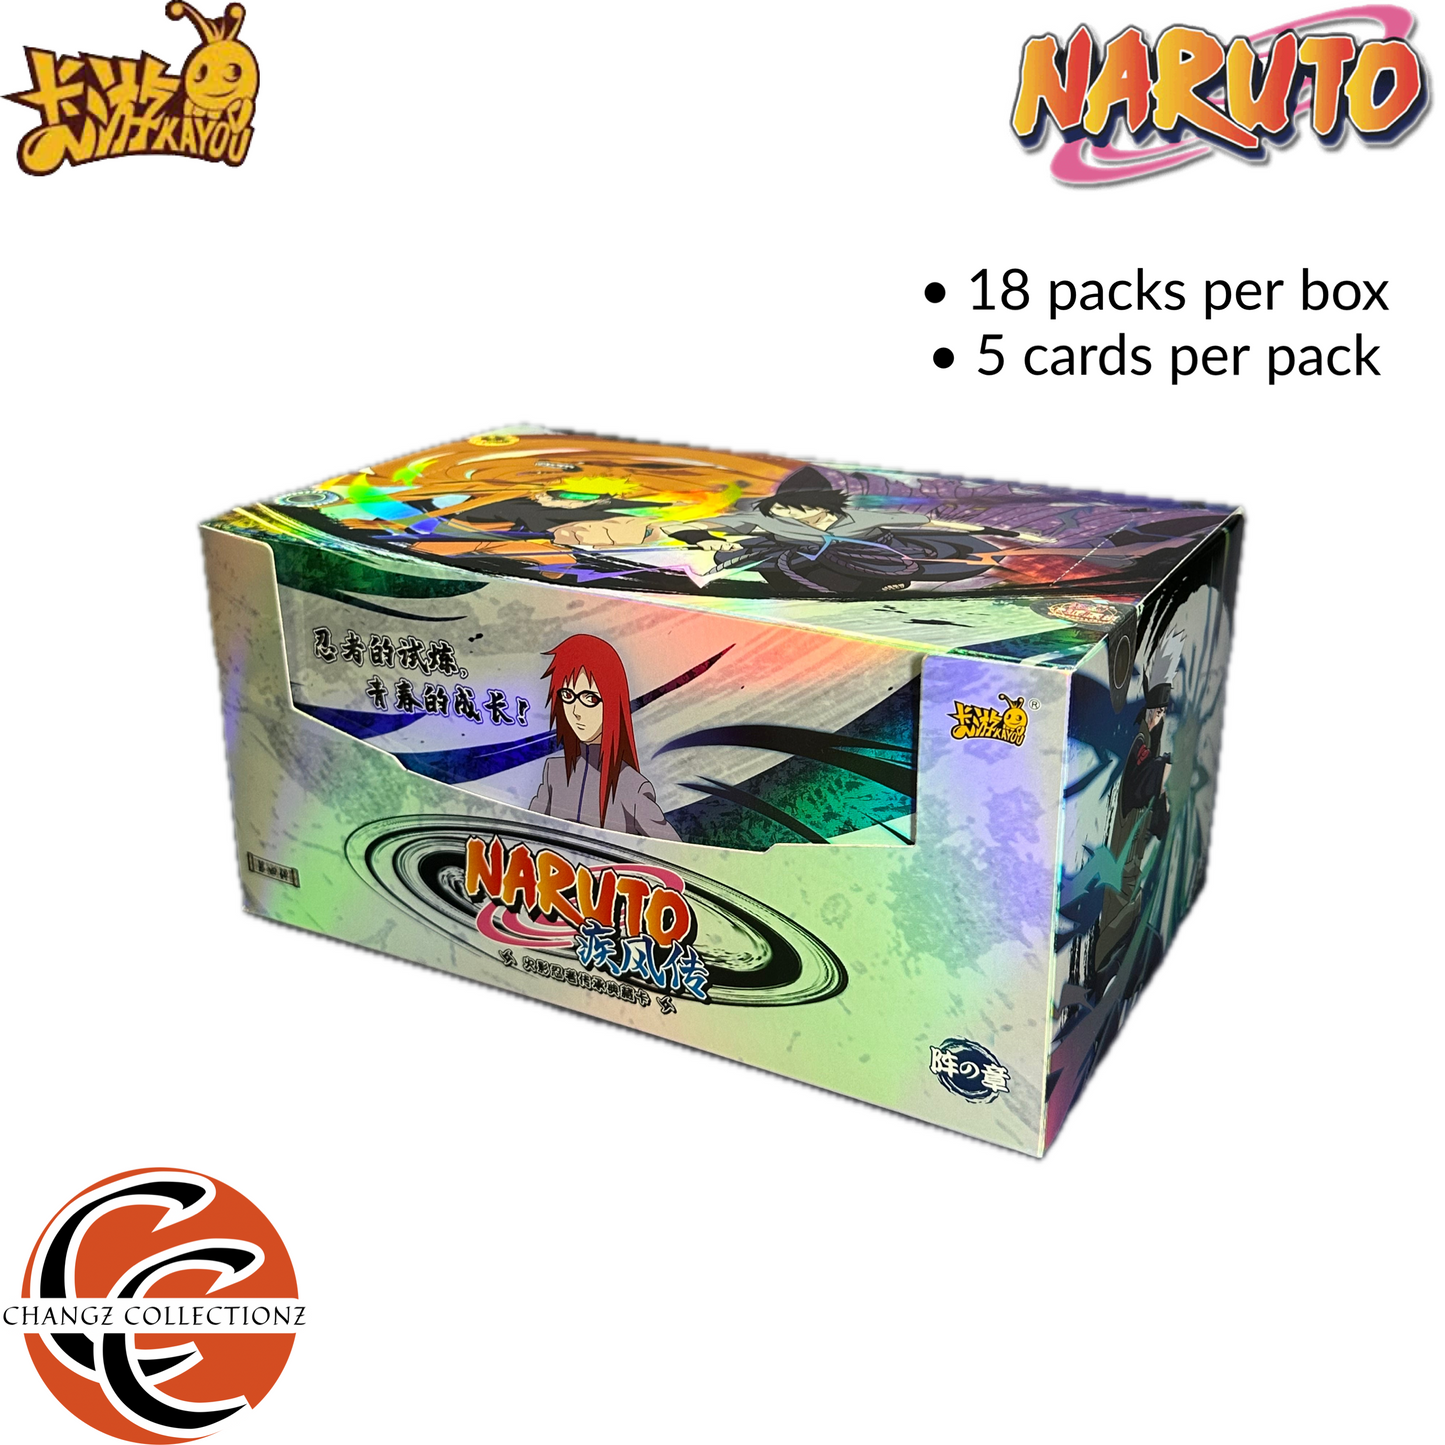 Kayou - Naruto - Tier 4 Boxes